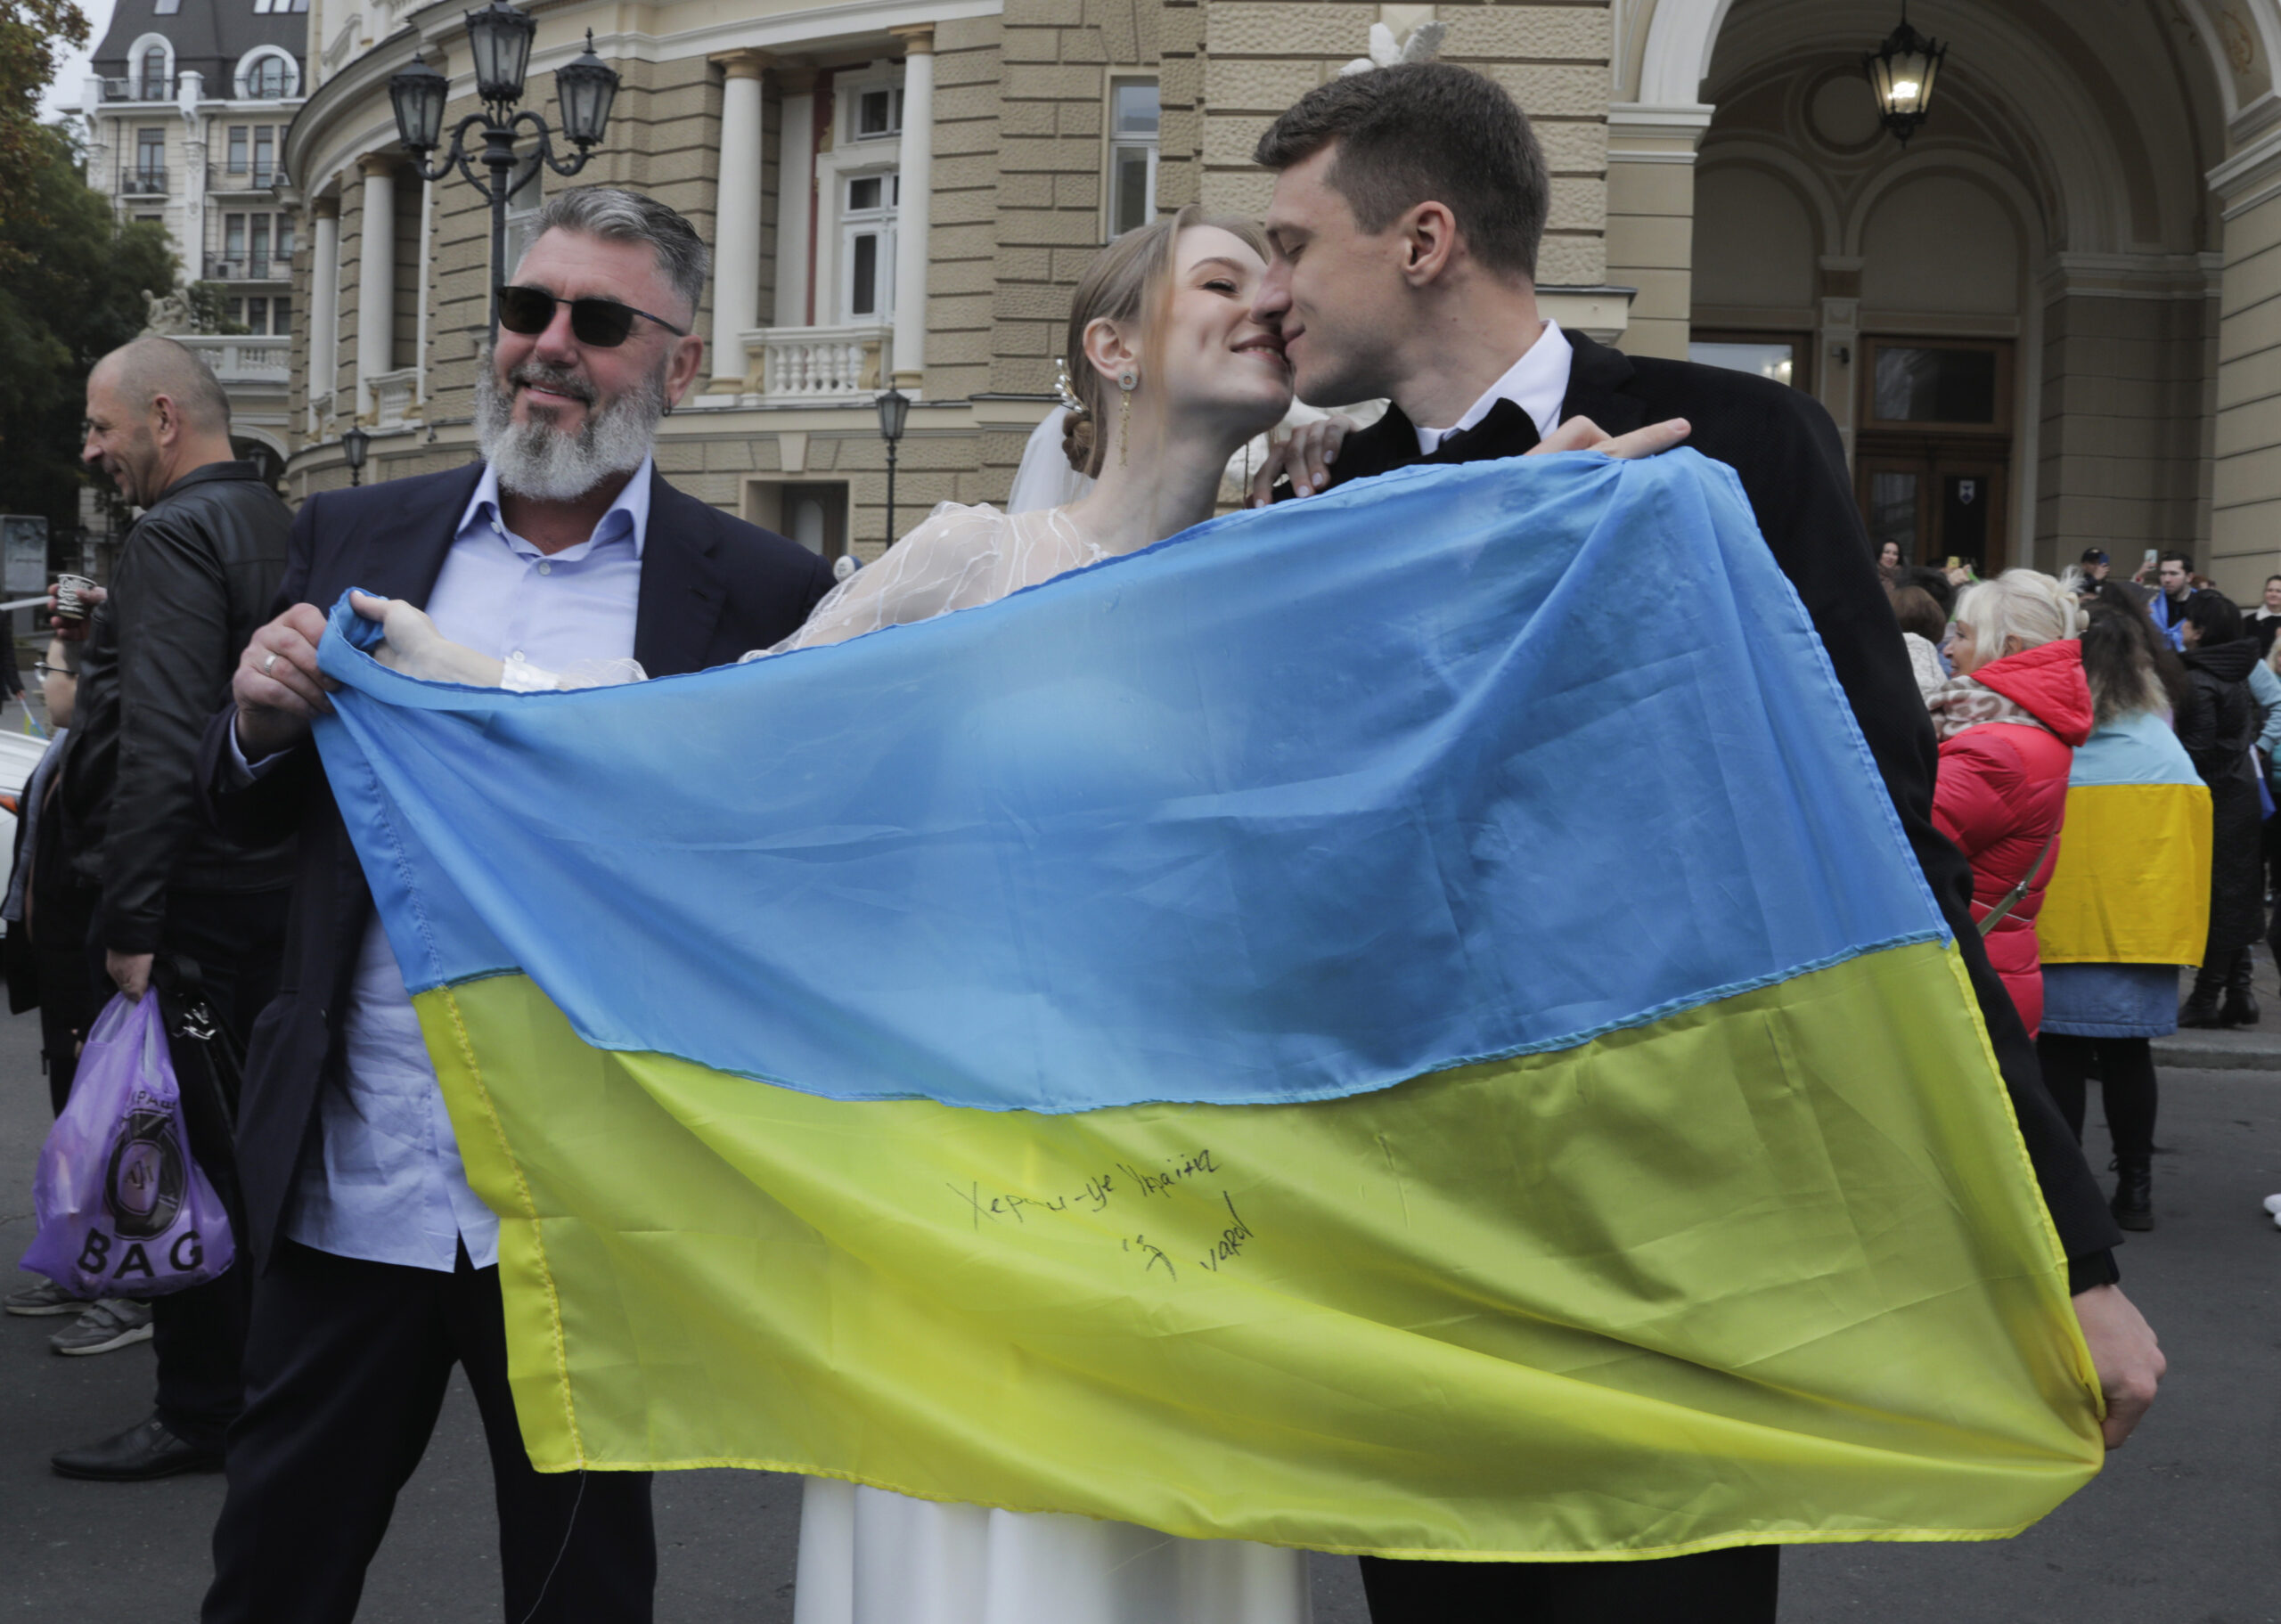 Ukrajina, Herson, venčanje, mladenci